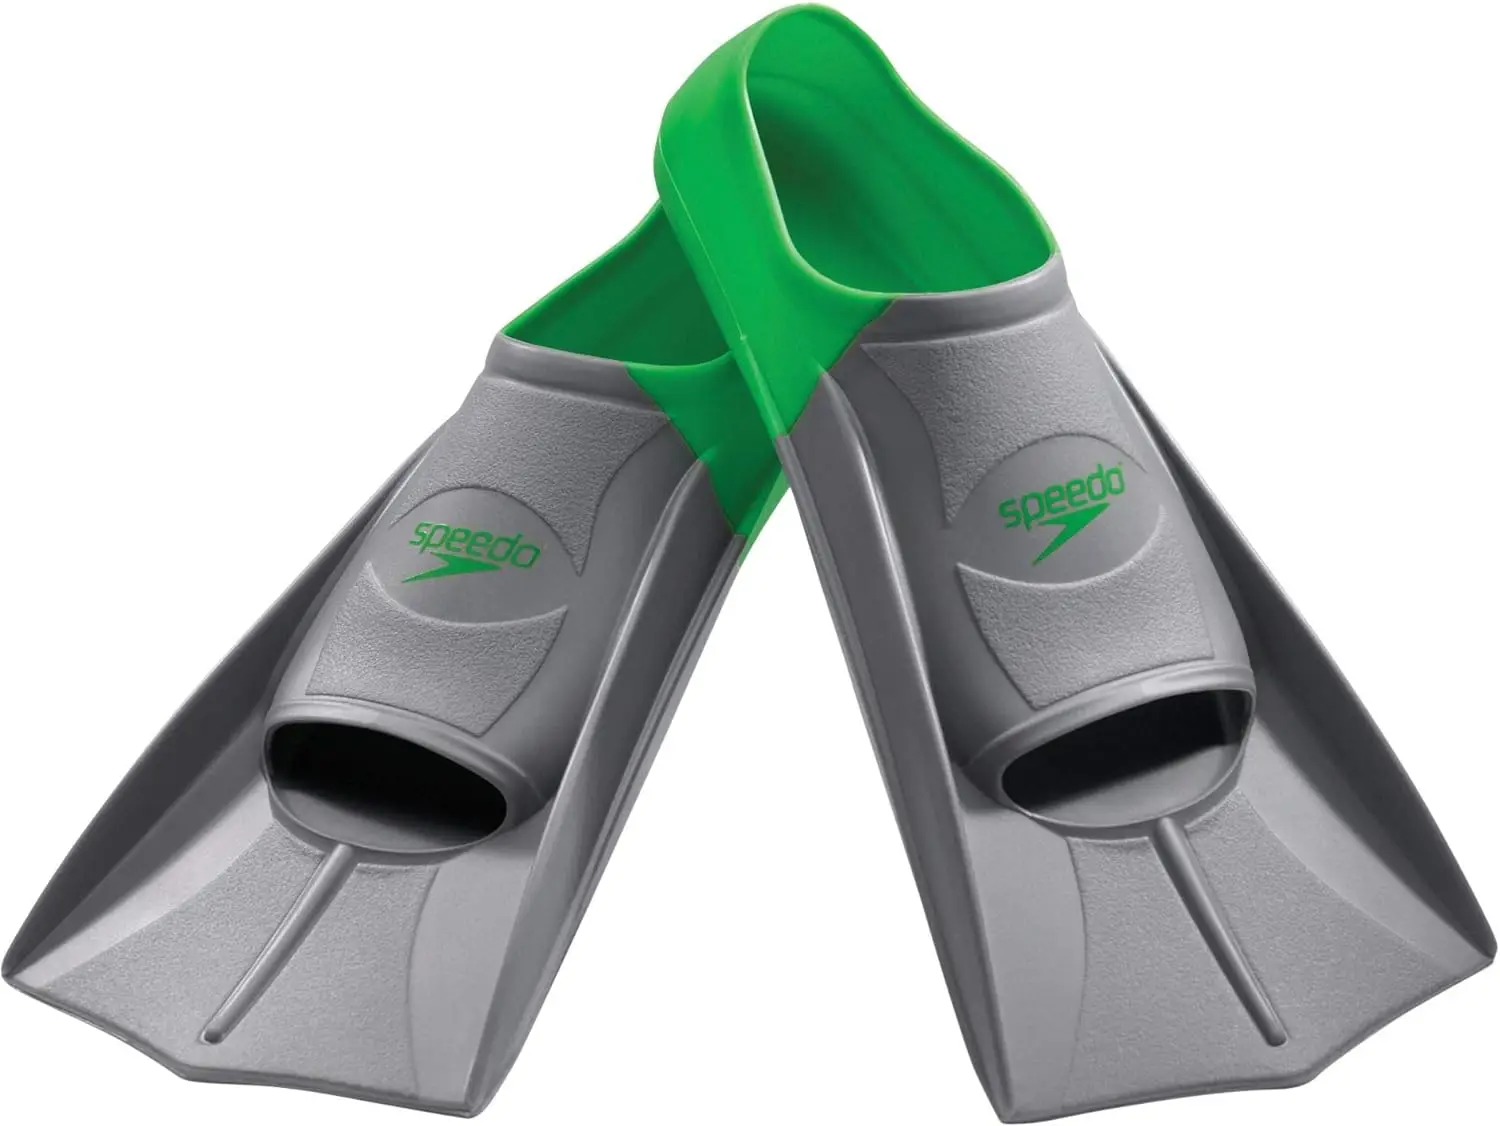 

de borracha para treino de nataçã unissex, verde/cinza, P - tamanho de calçado masculino 34-35 | Tamanho de calçado feminino